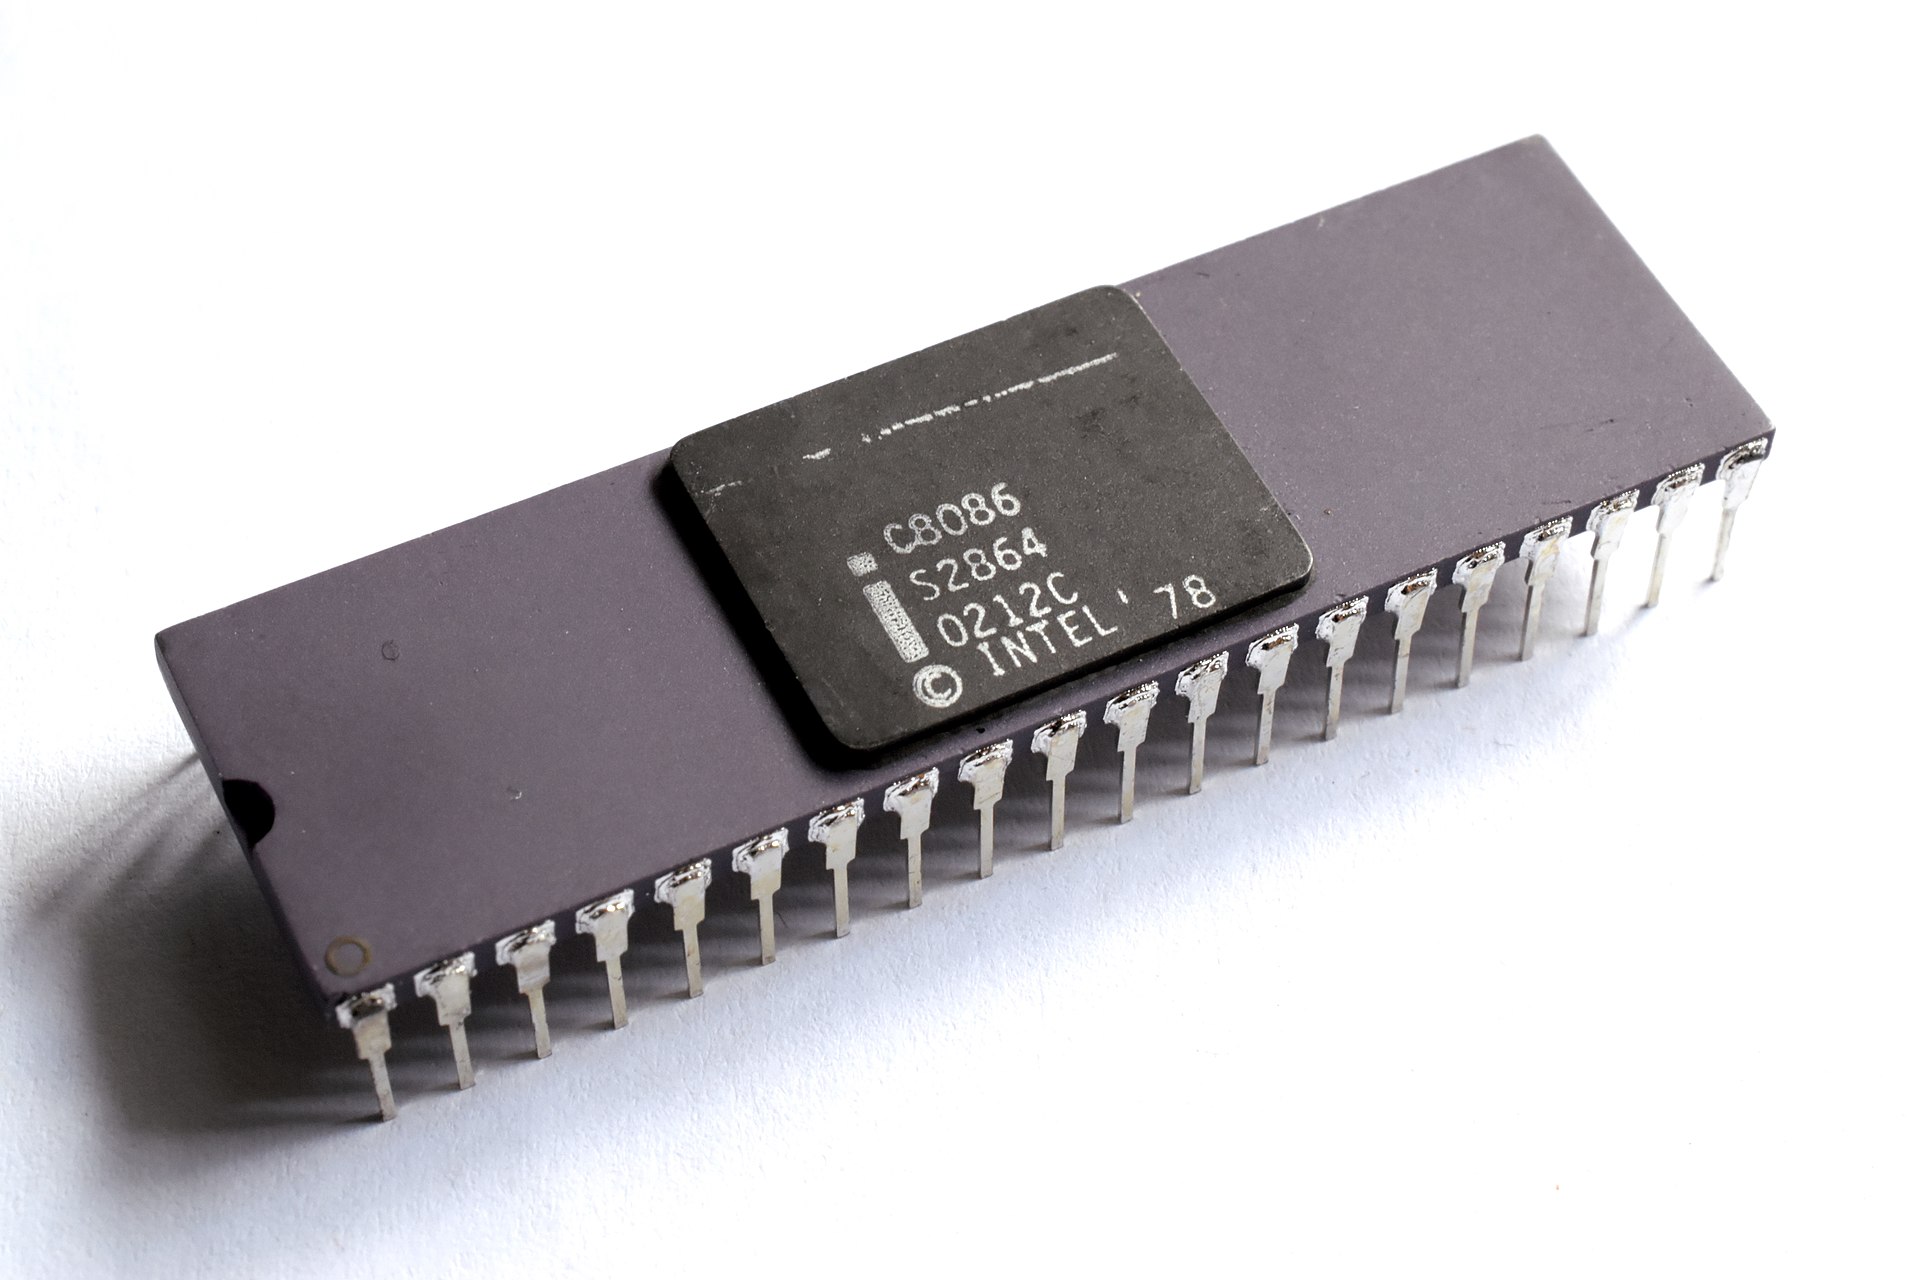 Intel C8086 处理器